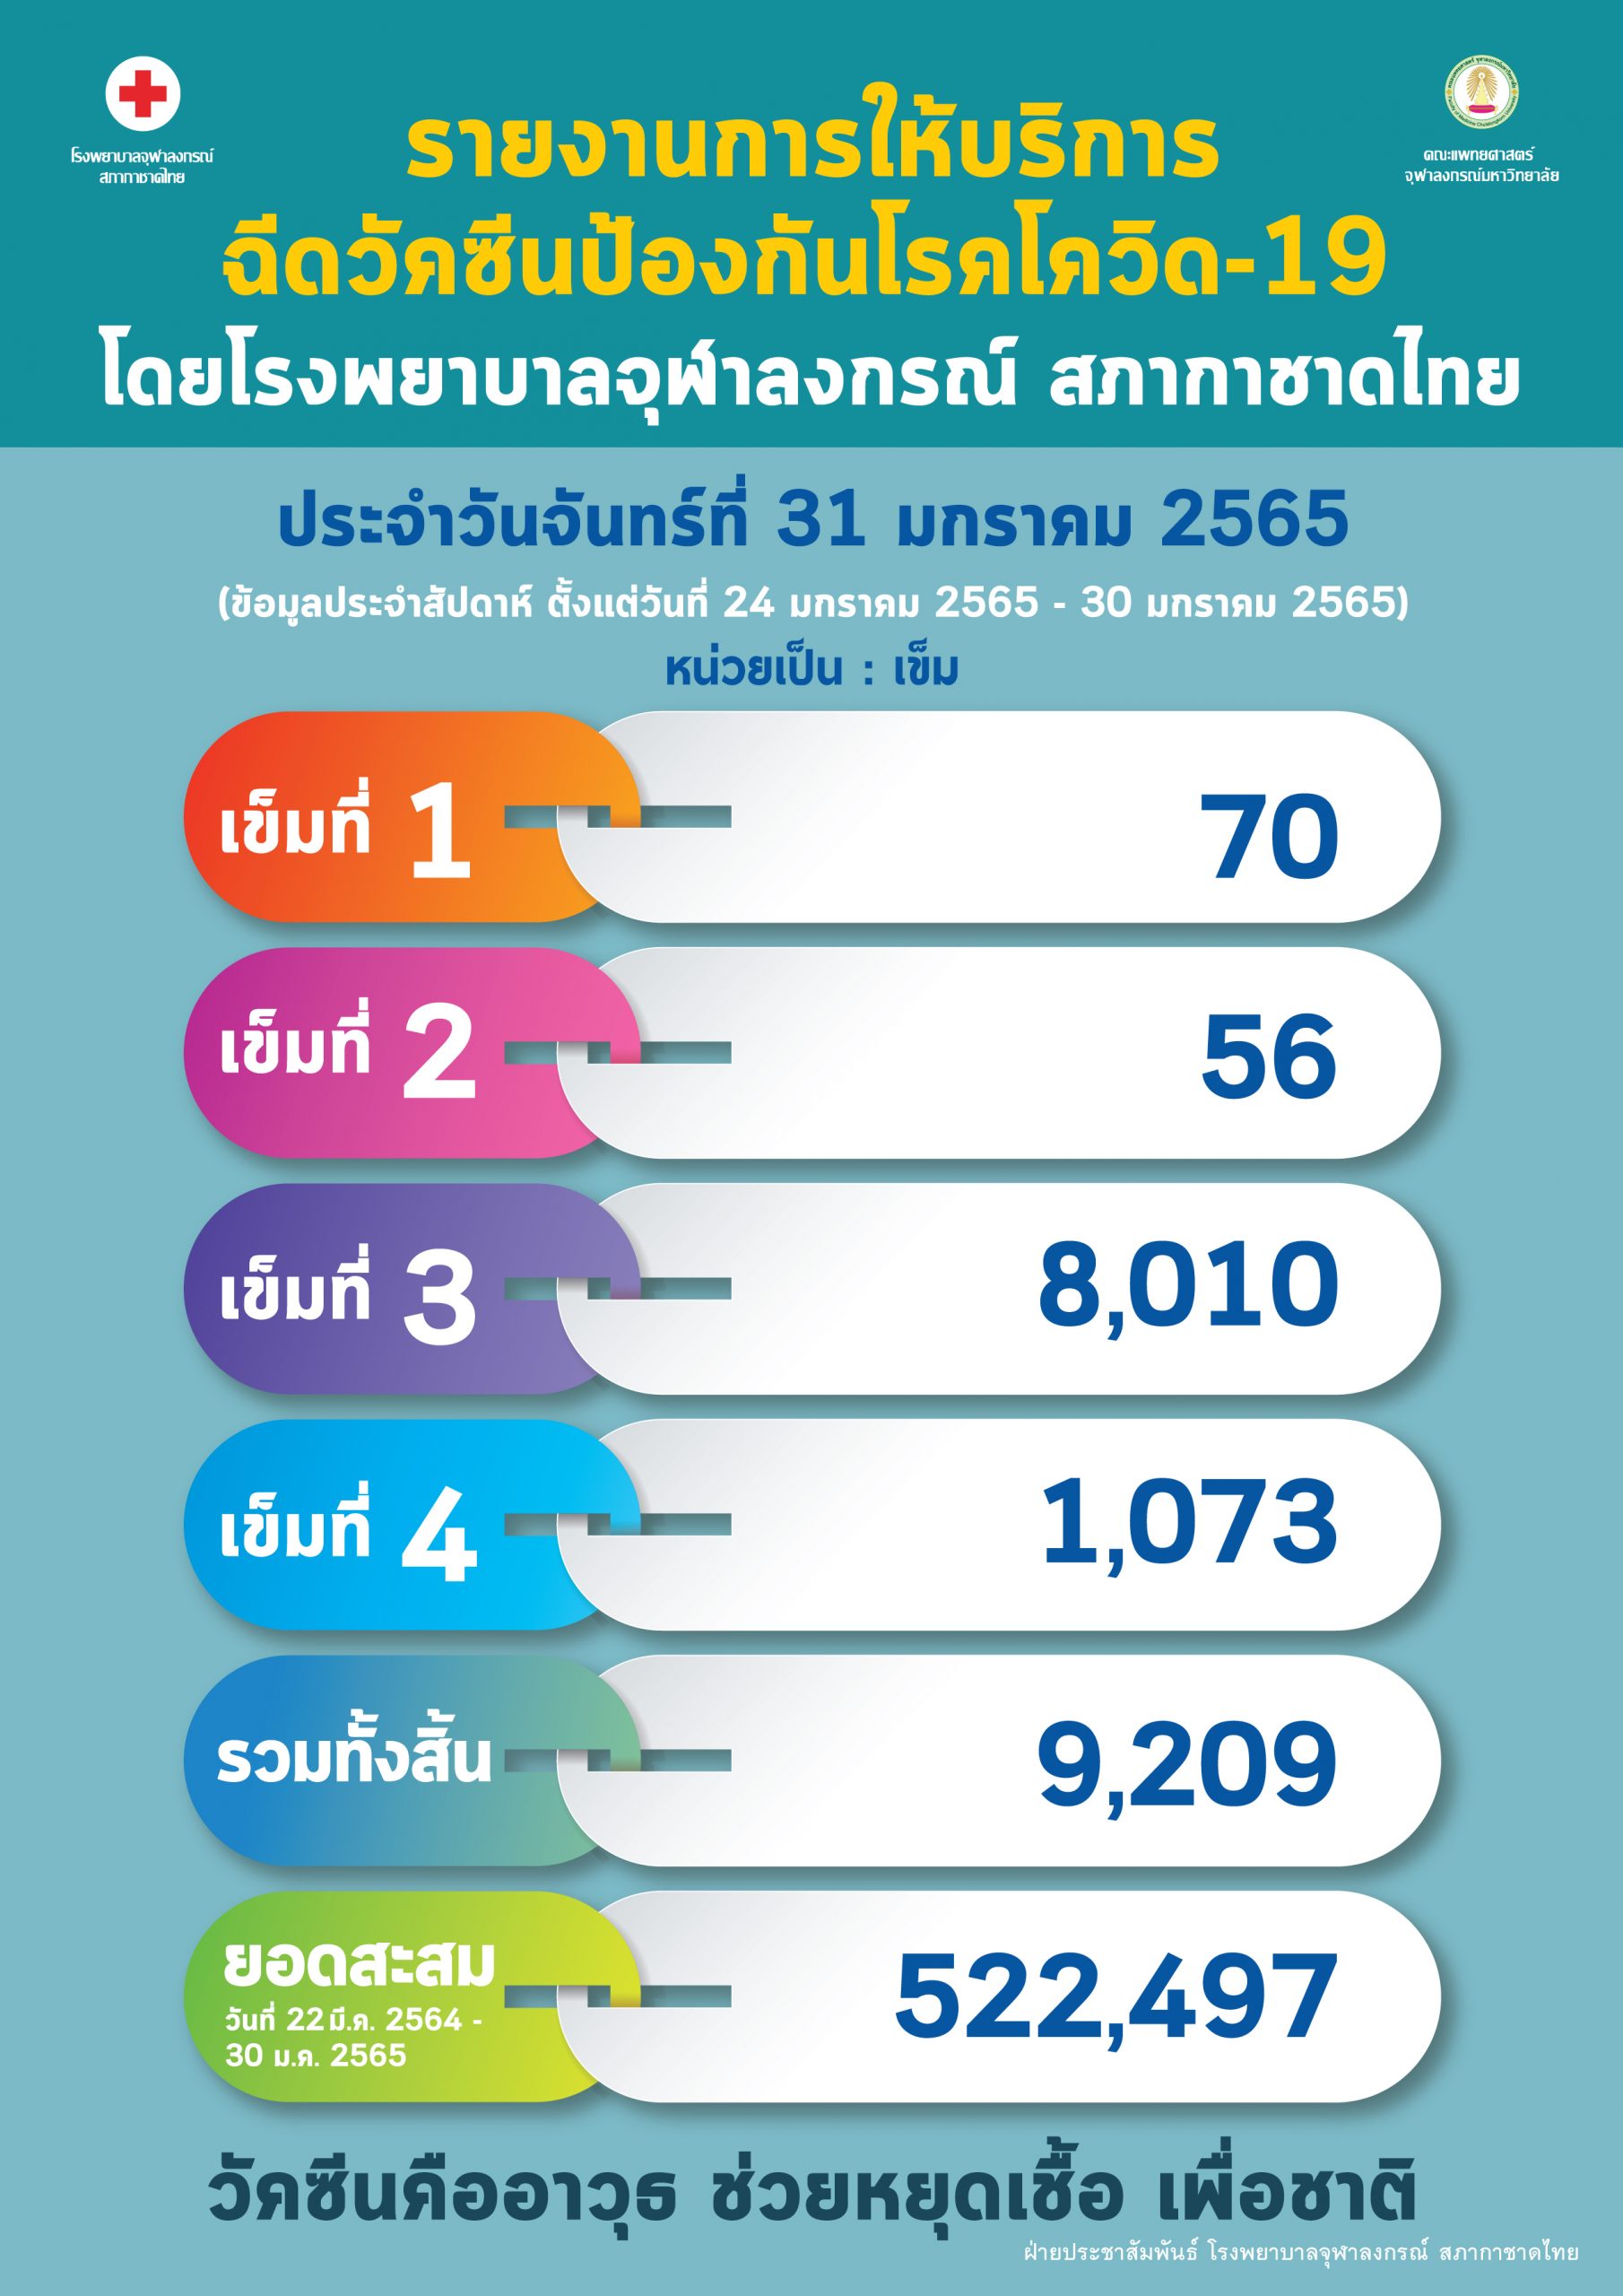 รายงานการให้บริการฉีดวัคซีนป้องกันโรคโควิด-19 โดยโรงพยาบาลจุฬาลงกรณ์ สภากาชาดไทย ประจำวันจันทร์ที่ 31 มกราคม 2565